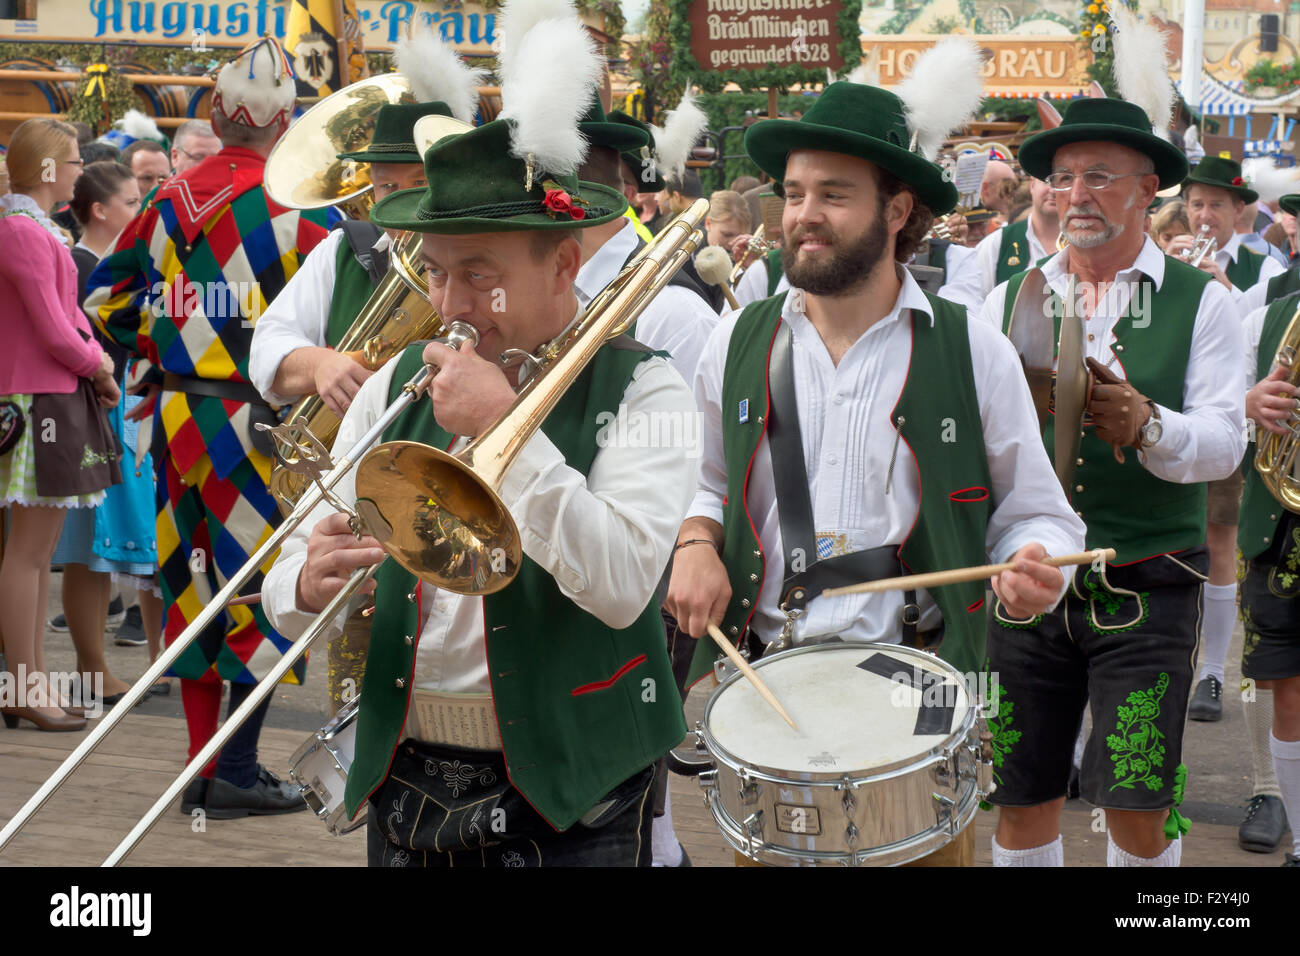 MÜNCHEN, DEUTSCHLAND – SEPT. 20, 2015: traditionelle Marching Bands mit lokalen Kostümen unterhalten Scharen von Besuchern auf dem jährlichen Oktoberfest. Das Festival läuft vom 19. September bis 4. Oktober 2015 in München Stockfoto